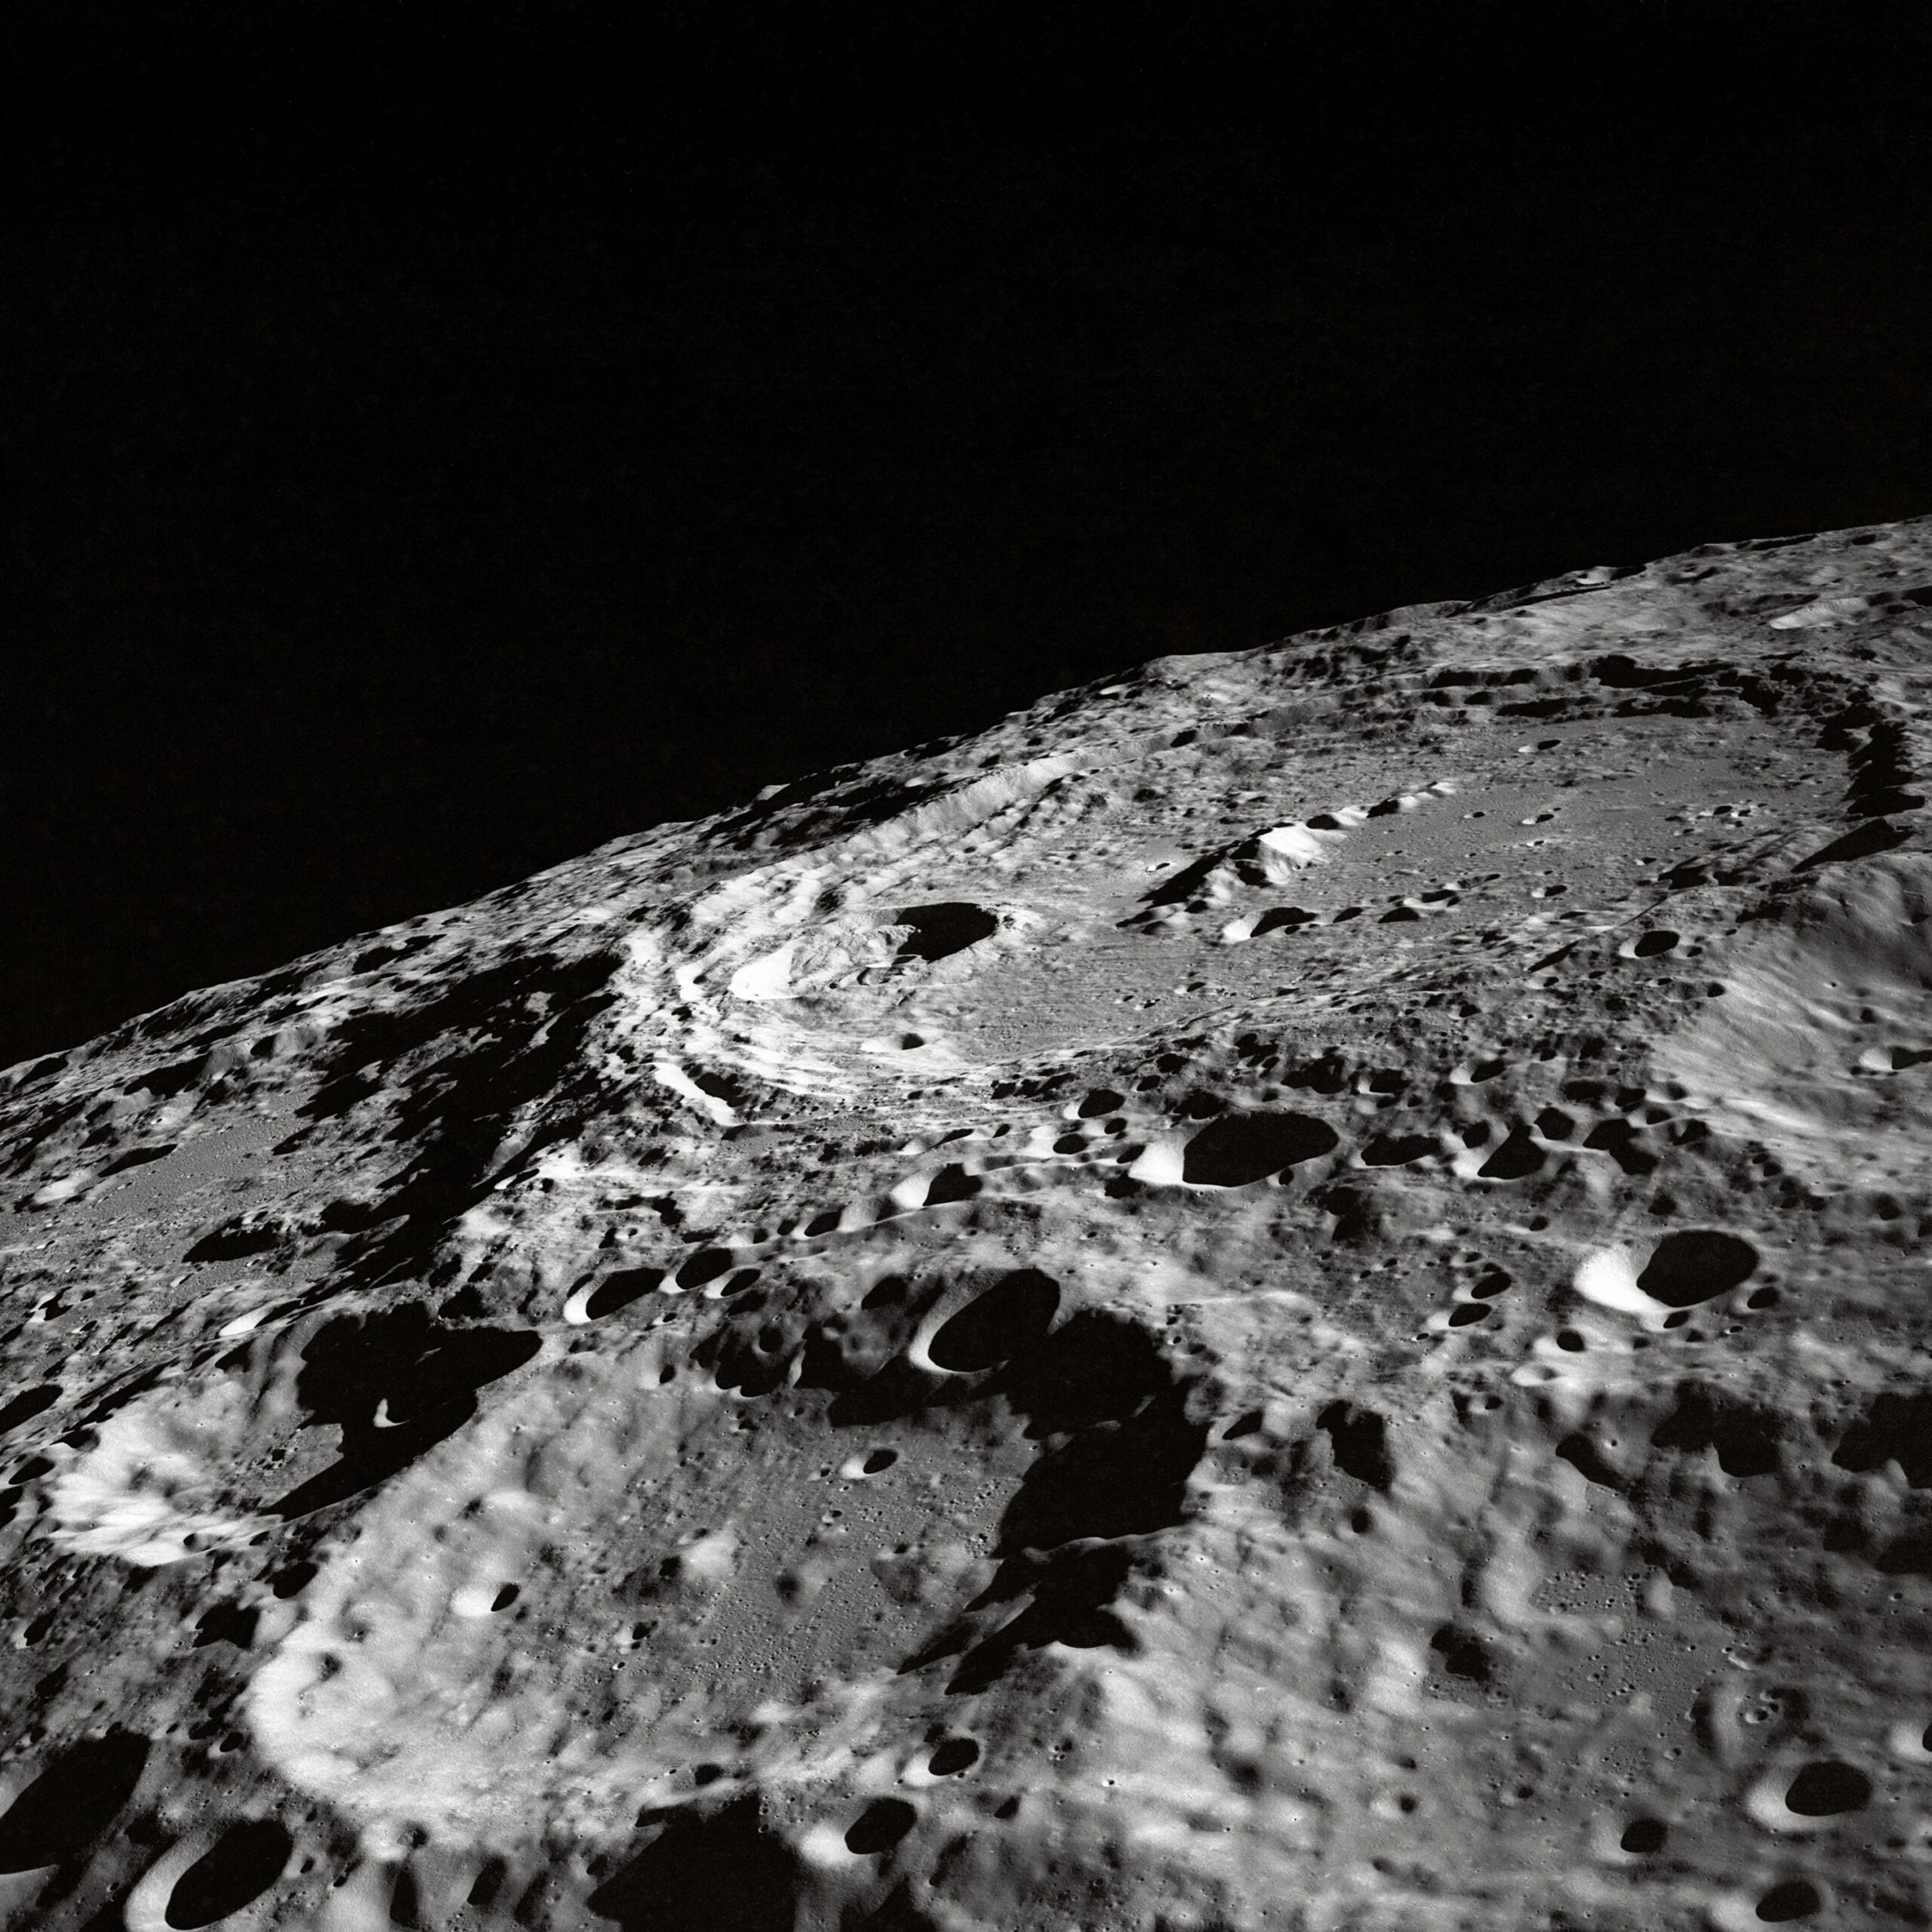 Non-profit set up to explore lunar resources